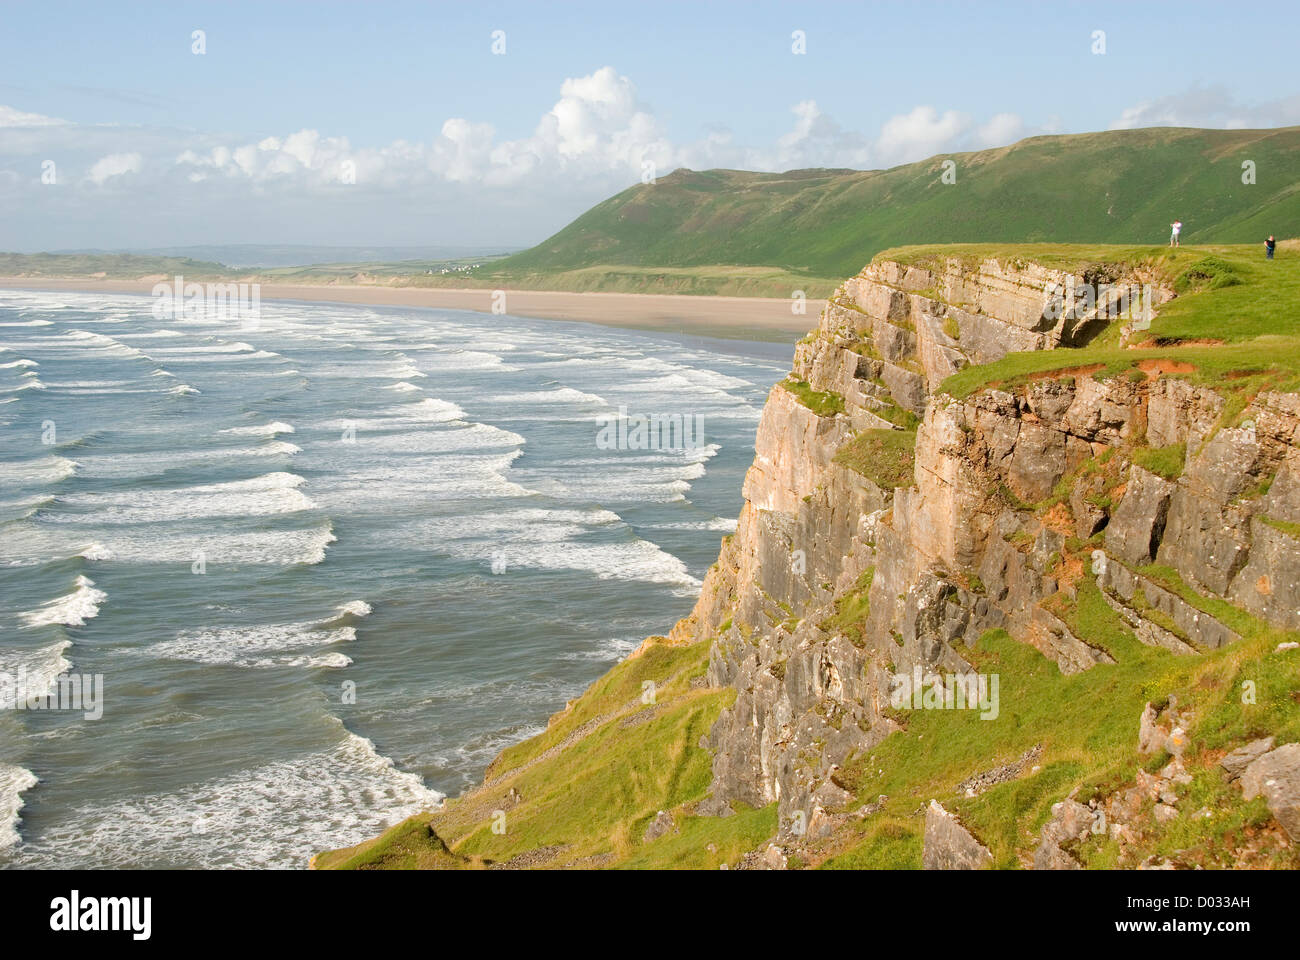 La gente en un acantilado, olas, playa, Rhossili Bay, la Península de Gower, Wales, Reino Unido, Europa Foto de stock